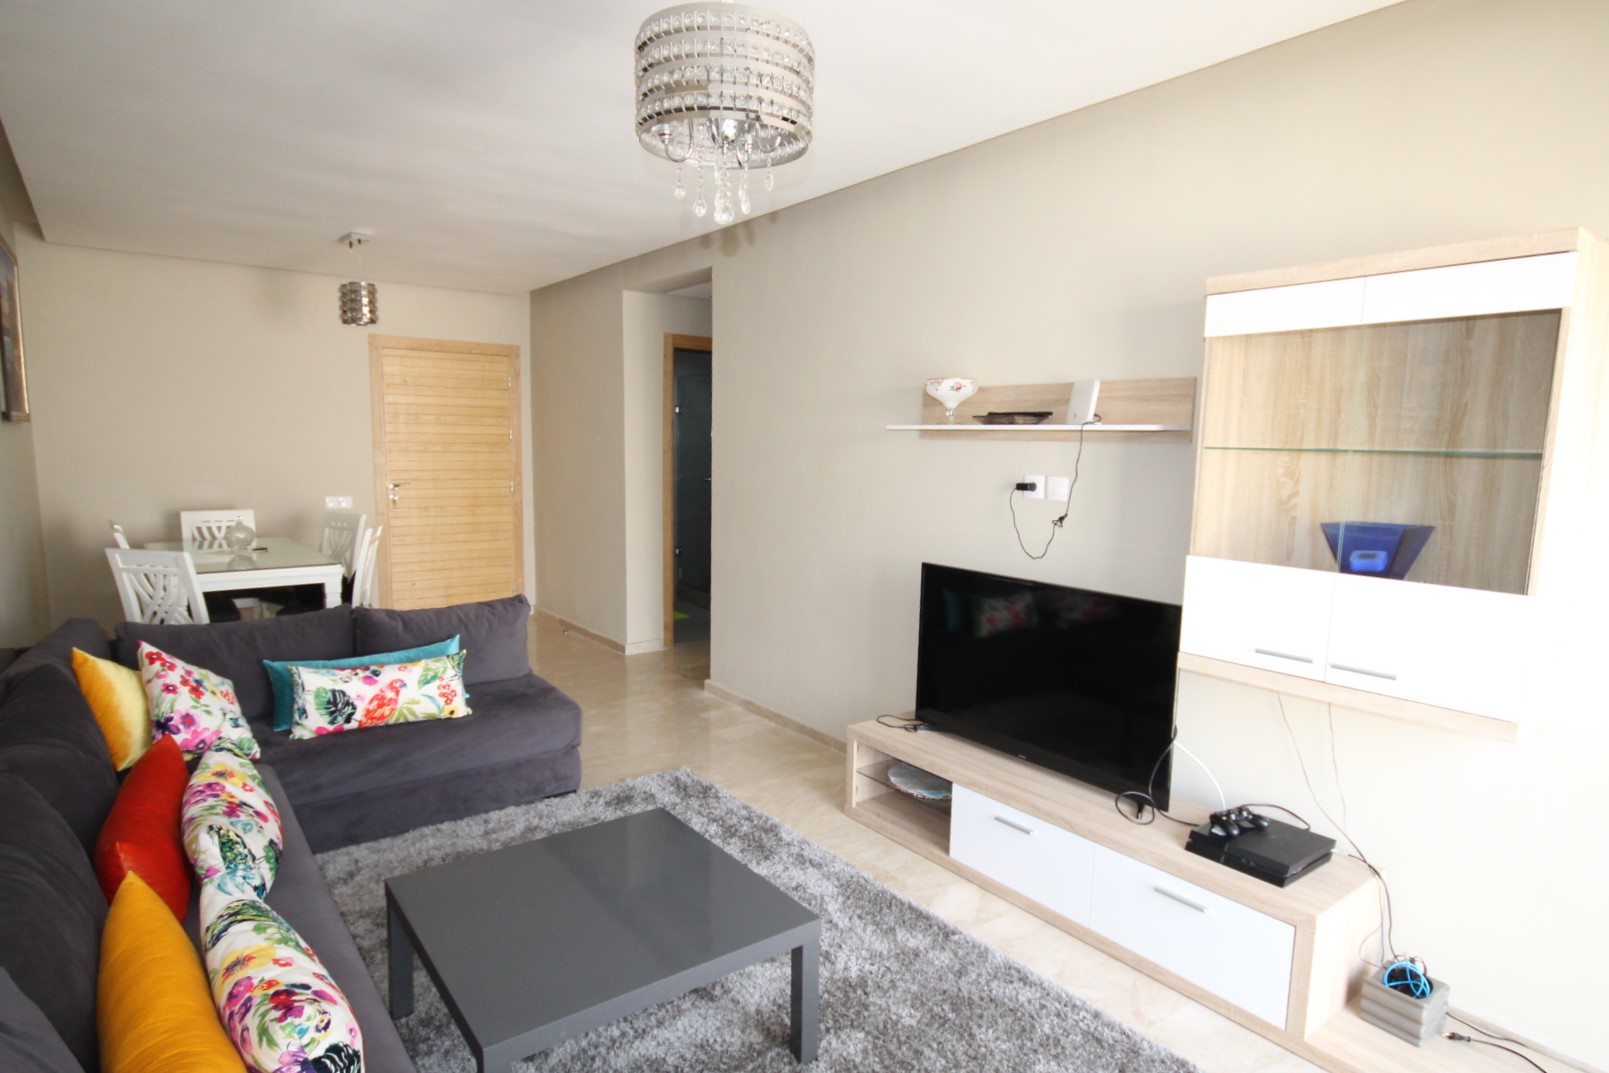 à louer agréable appartement neuf de 94 m² meublé avec gout avec terrasse